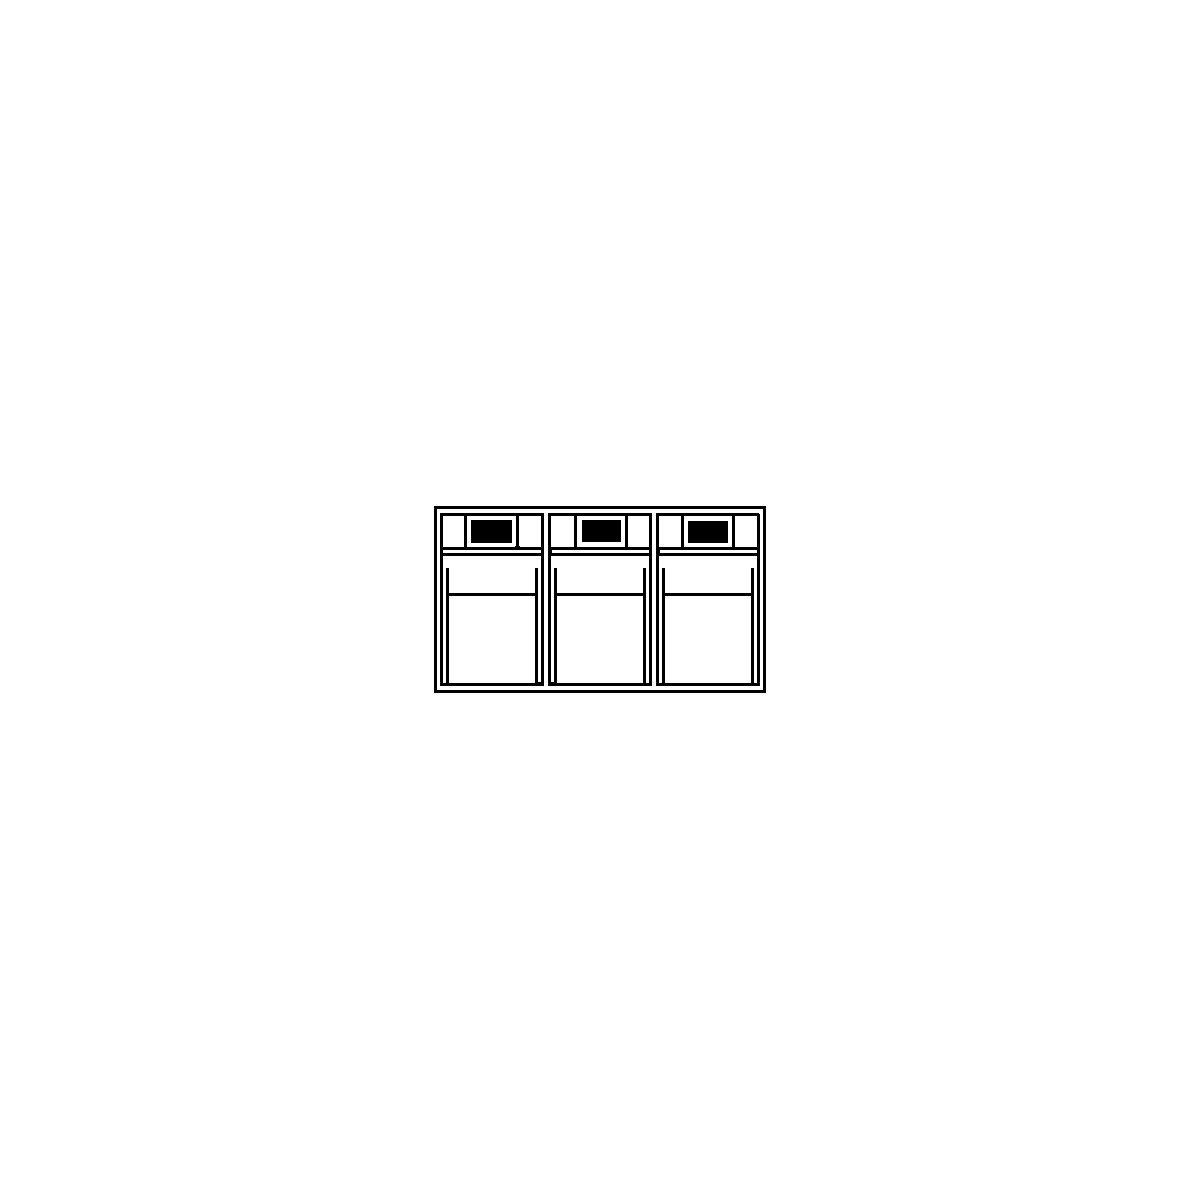 Sistem de depozitare cu cutie cu clapetă (Imagine produs 5)-4